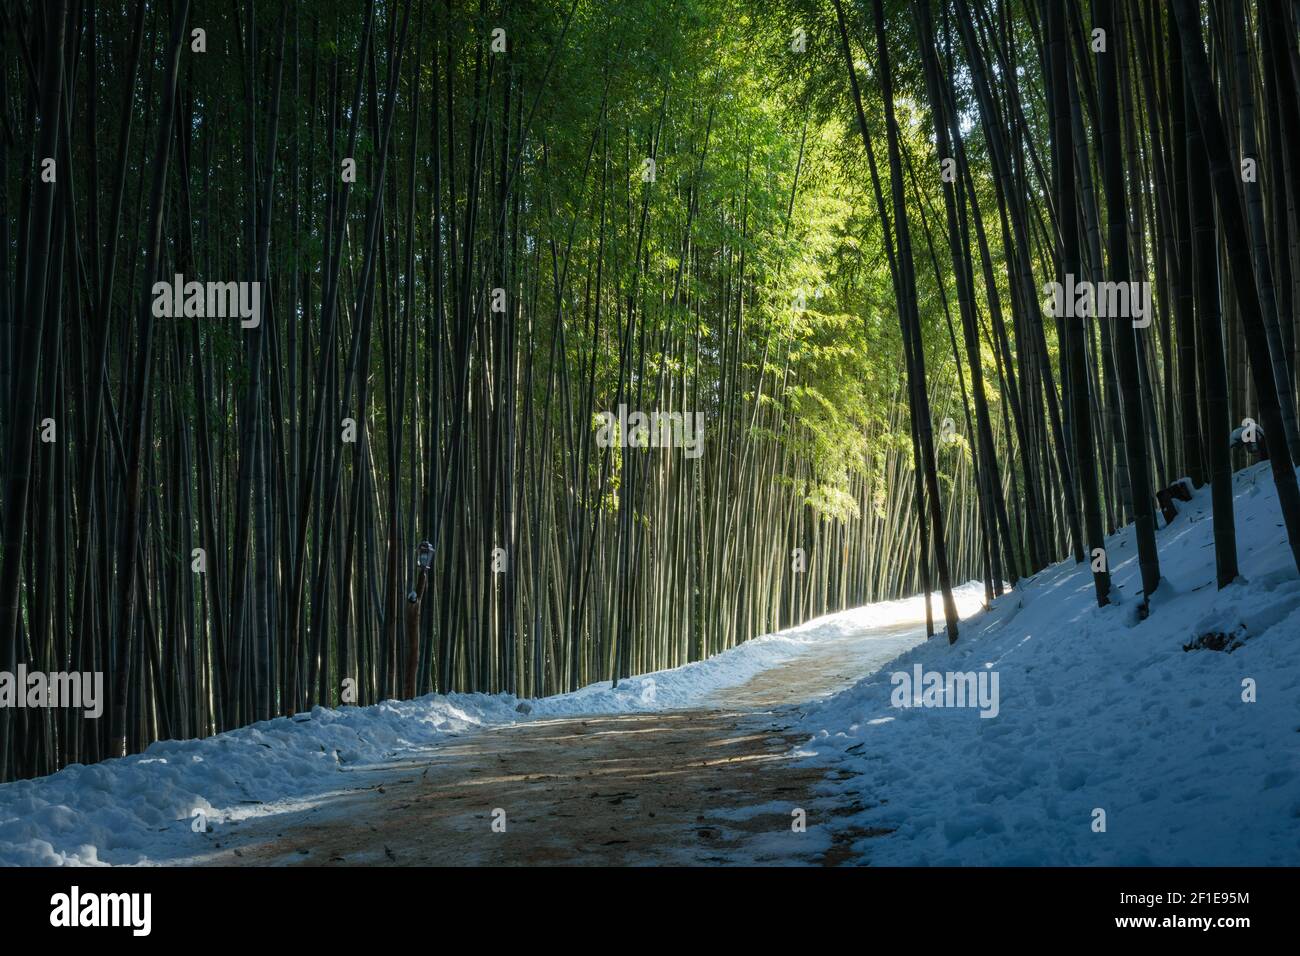 Un misterioso percorso forestale di bambù illuminato dalla luce del sole, uno splendido paesaggio invernale in Corea. Foto Stock